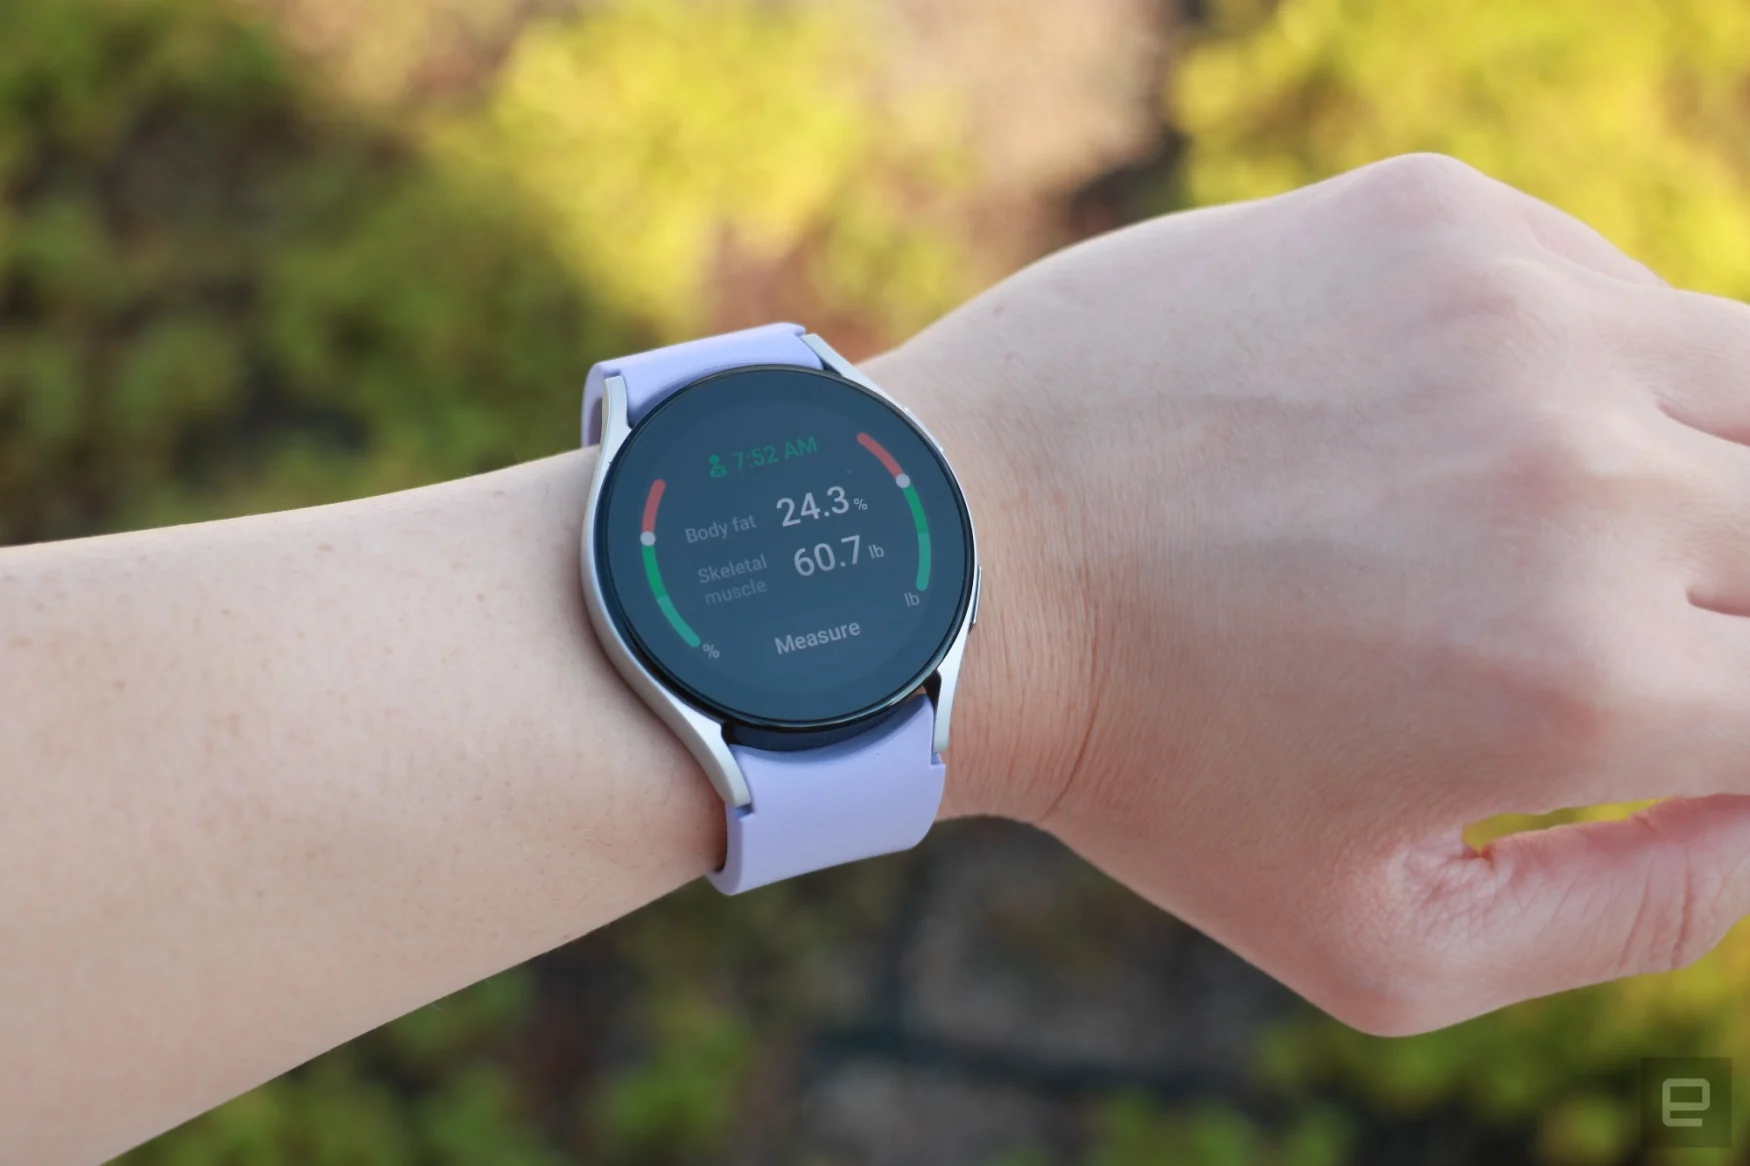 Il Samsung Galaxy Watch 5 al polso, che mostra lo strumento di composizione corporea del dispositivo con alcuni risultati visualizzati.  Lo schermo dice che il grasso corporeo è del 24,3%, mentre il muscolo scheletrico è del 60,7%.  Un pulsante in basso dice 